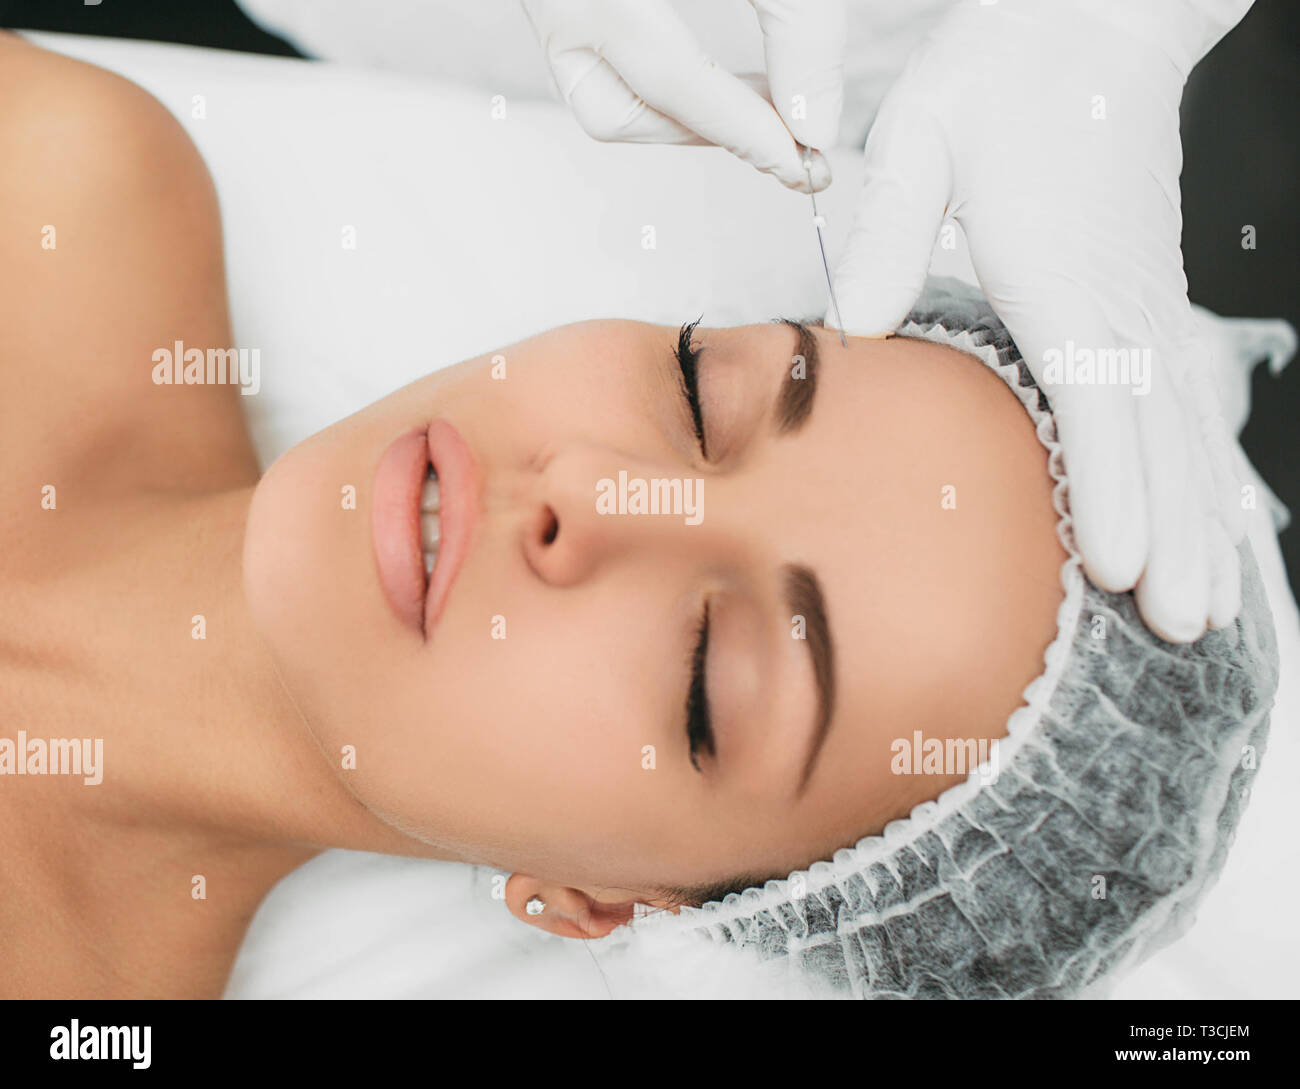 Kosmetikerin installiert Die mesothreads in das Gesicht der Frau. Anti-aging kosmetische Verfahren Stockfoto